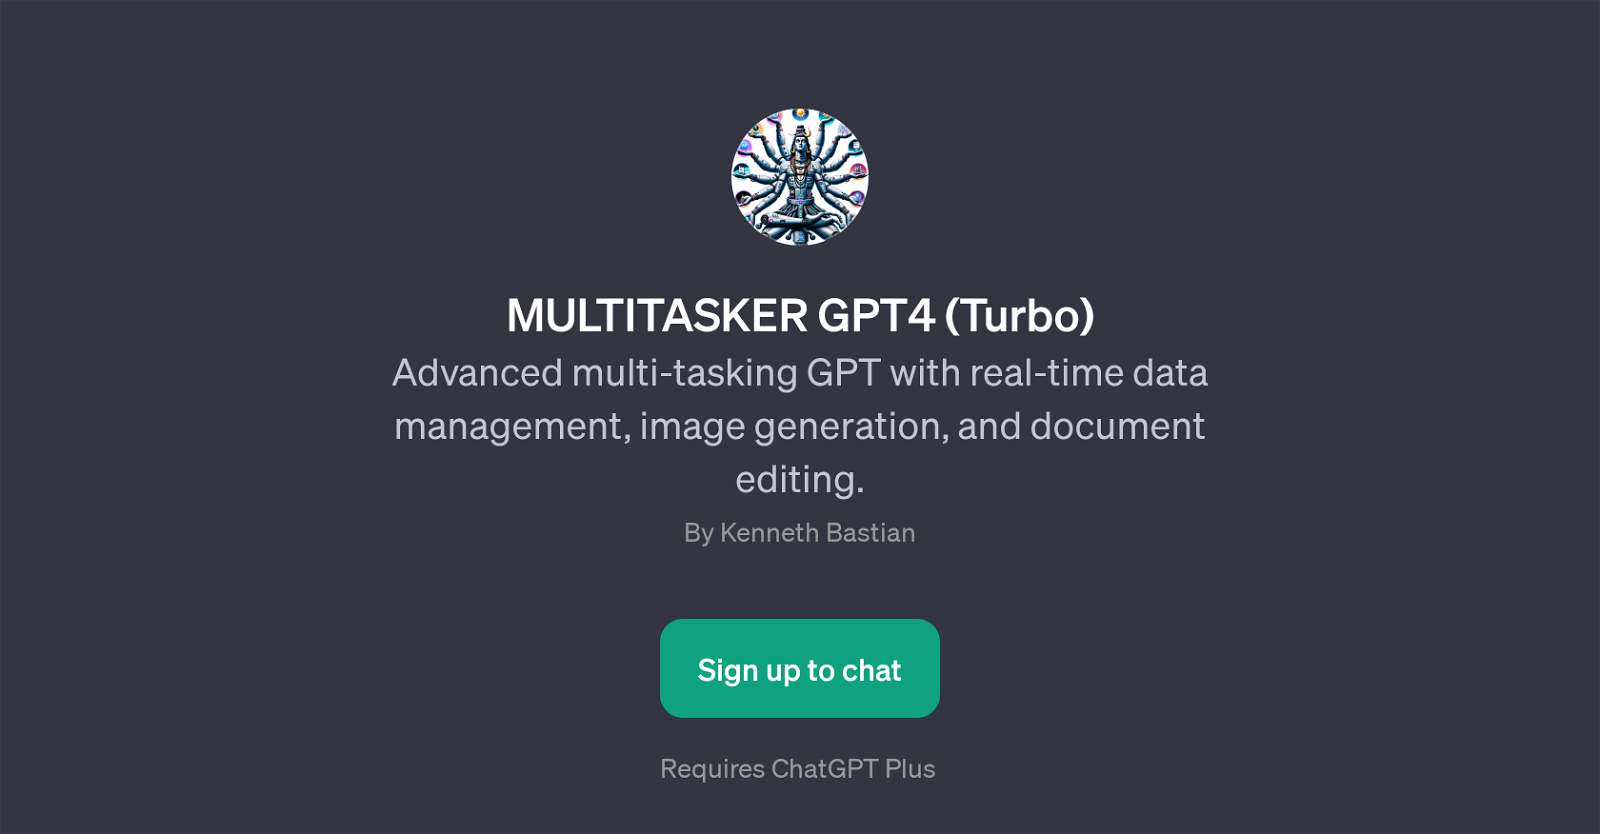 MULTITASKER GPT4 (Turbo) website